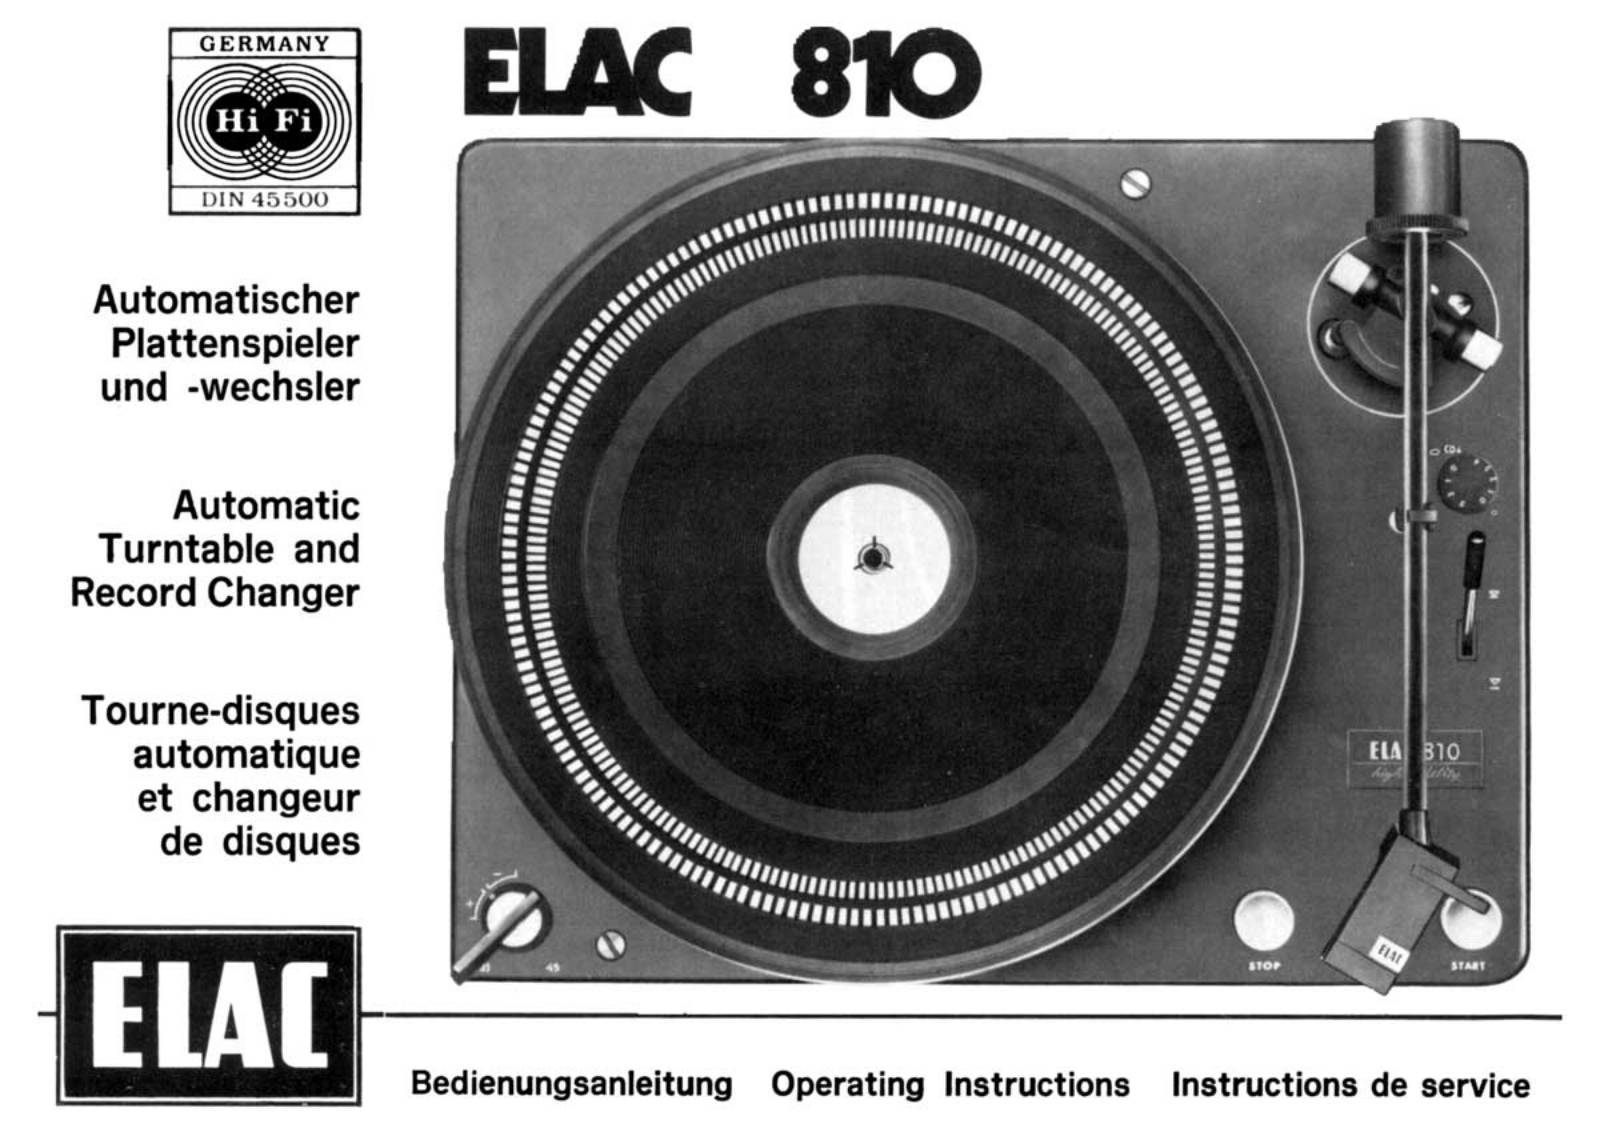 ELAC 810